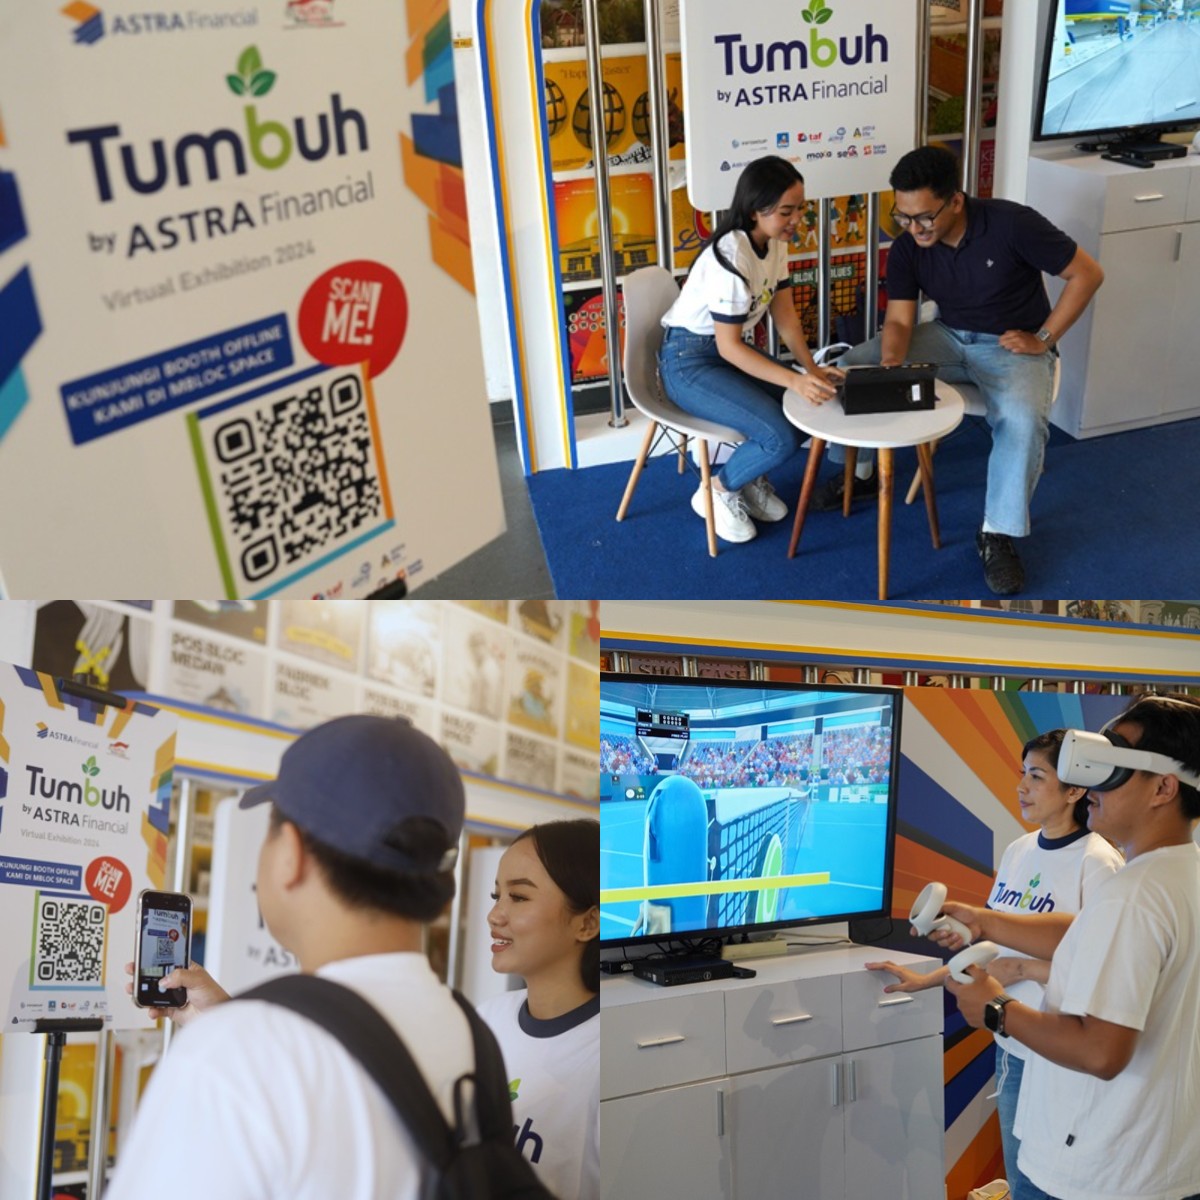 Pop Up Booth Tumbuh by Astra Financial Gebrak 7 Kota! Hadirkan Promo & Kebaikan di Bulan Suci Ramadhan